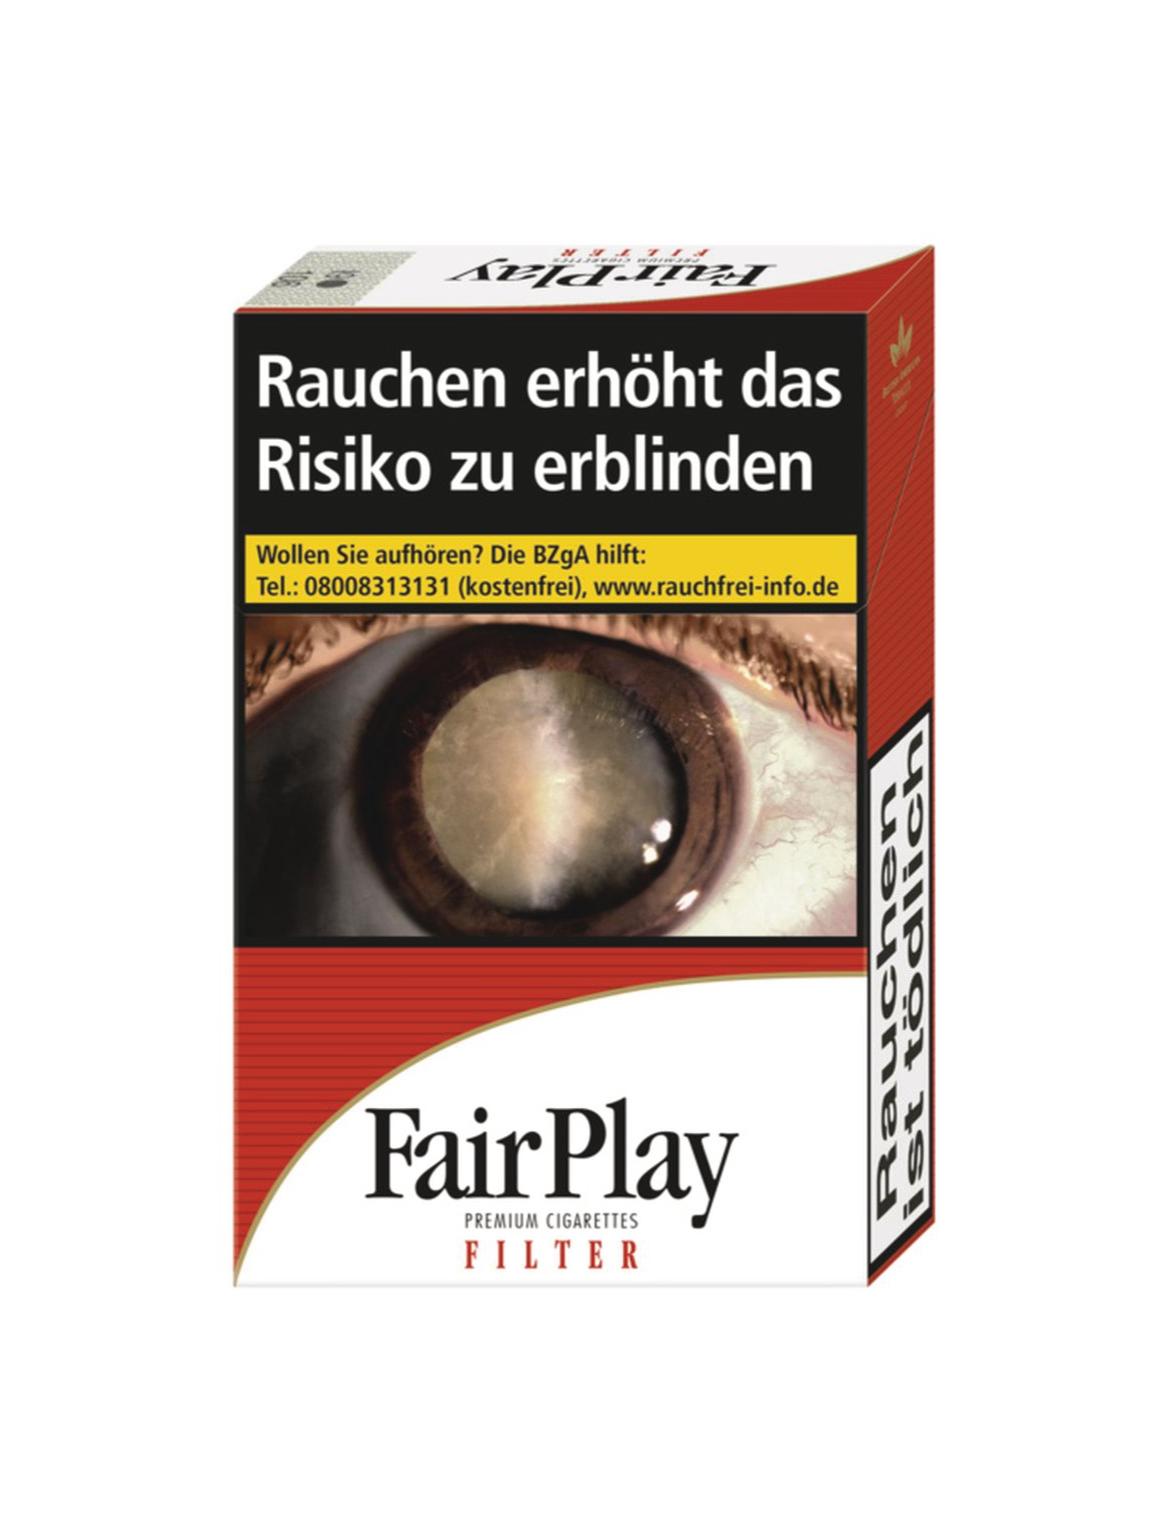 Fair Play Filter XL Zigaretten 1 Packung